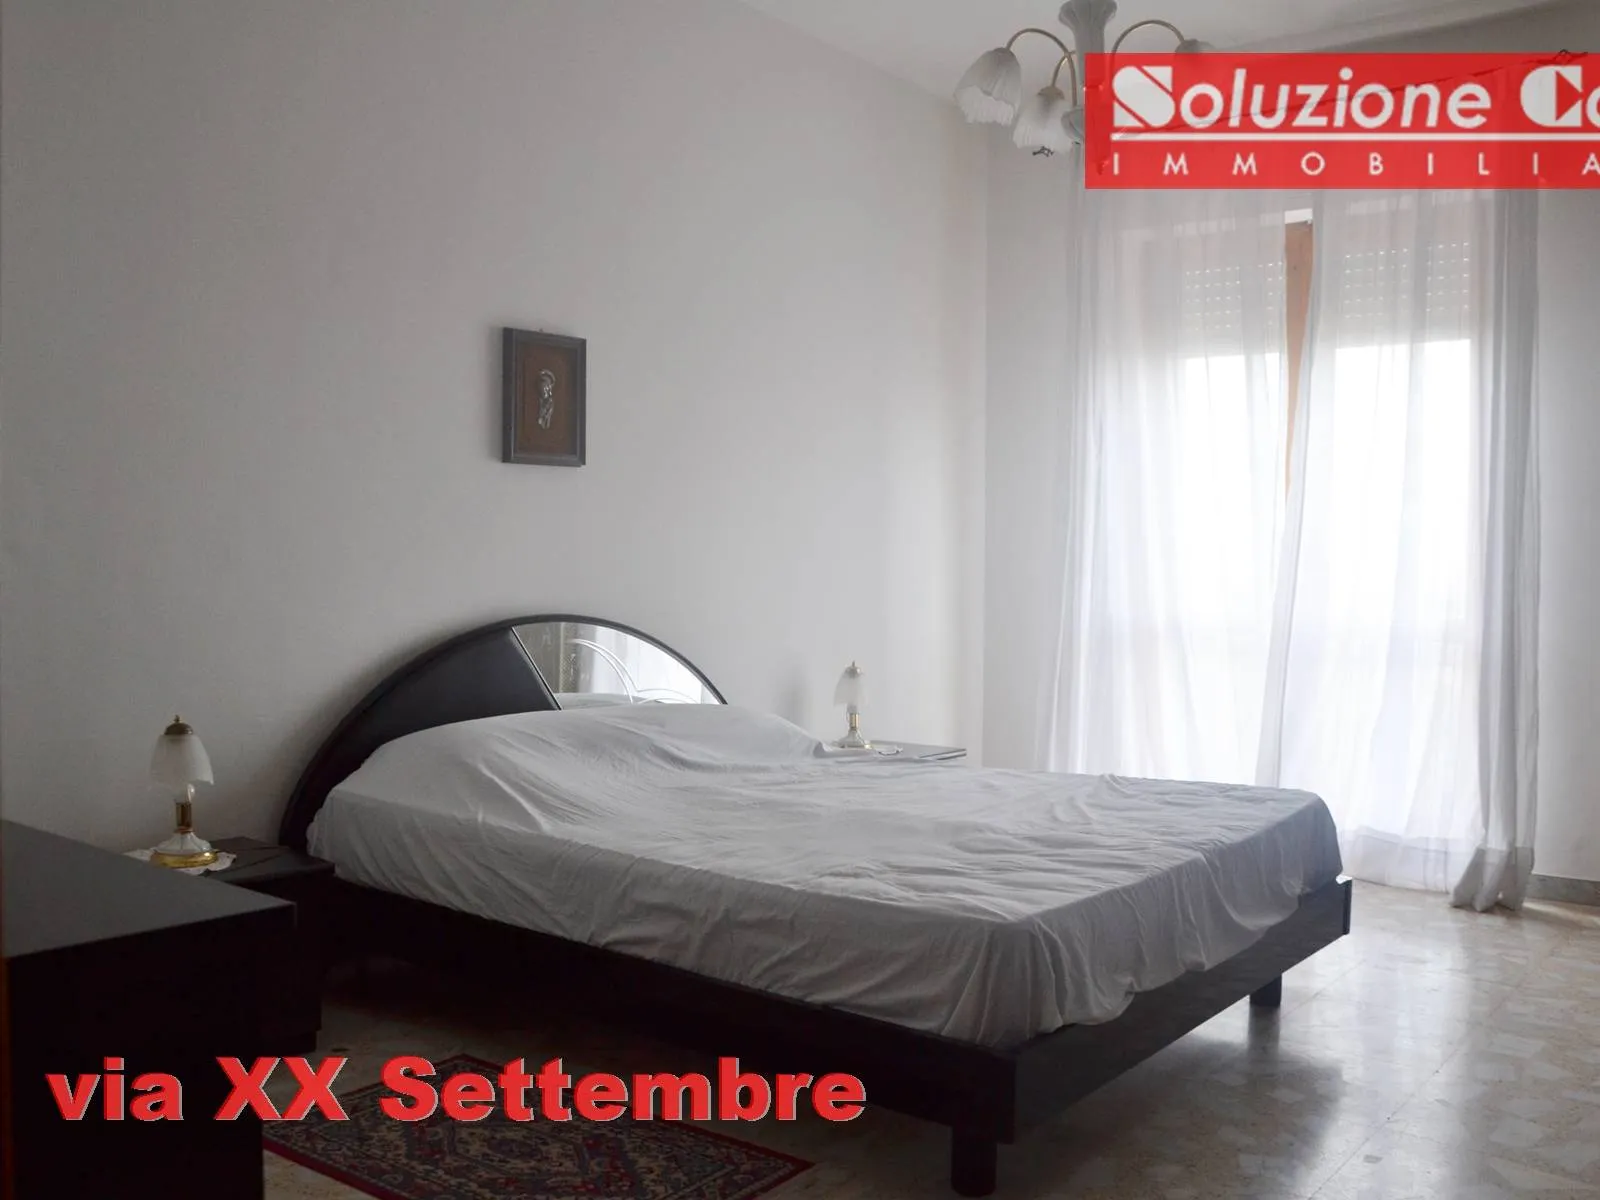 Immagine per Appartamento in vendita a Canosa di Puglia via XX Settembre